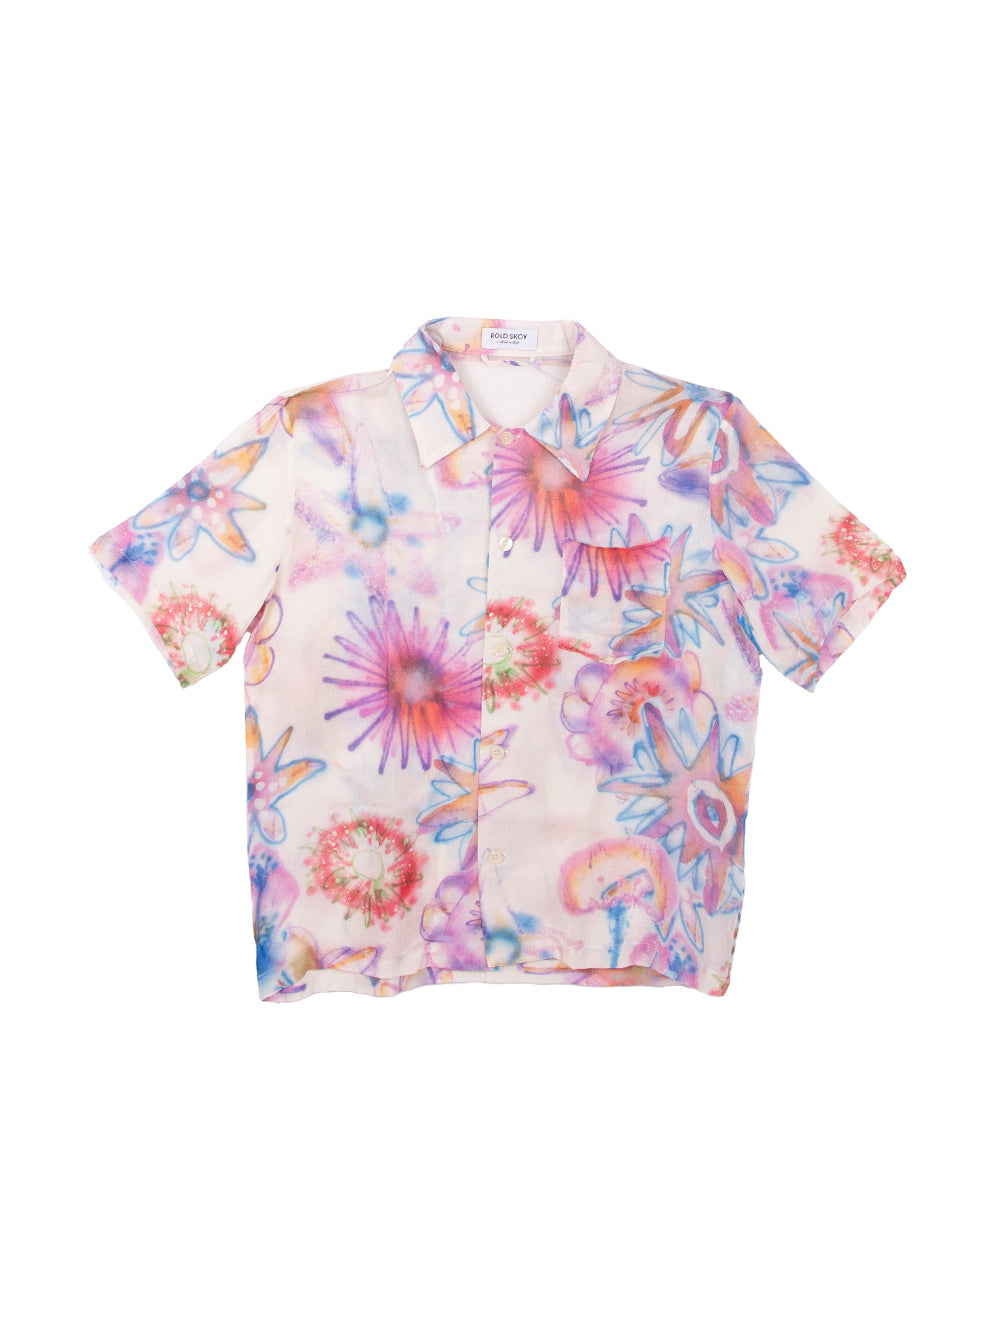 Quadro Acid Flowers shirt